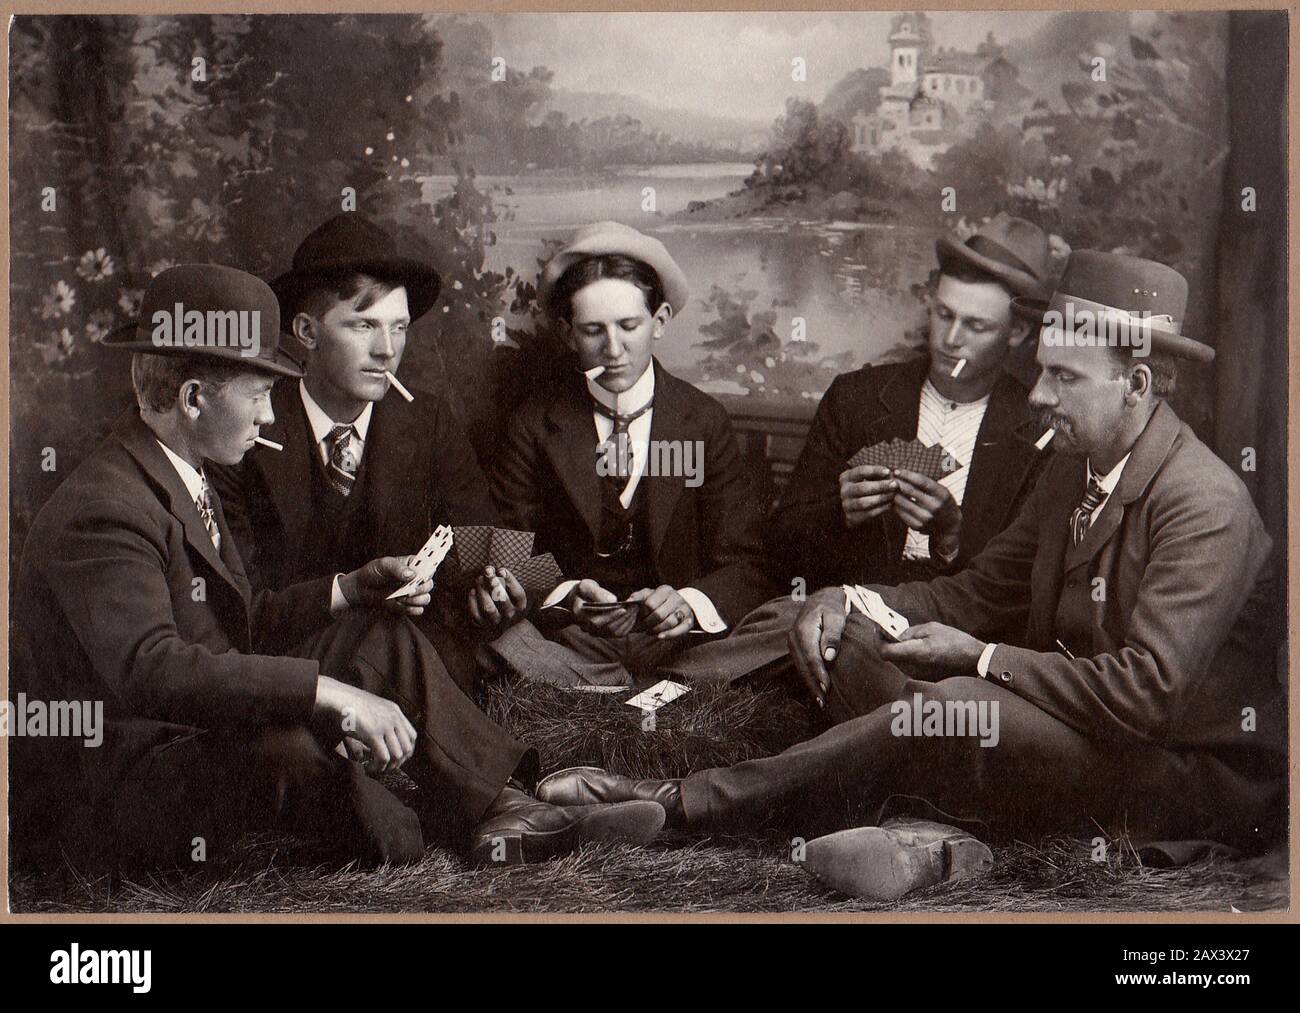 1908 ca ,  USA : Five friends at play . Photo by C. A. Johnson , Travelling Artist . - AMICI - portrait - ritratto - UOMO - UOMINI - YOUNG MEN - MAN - giovanotti - giovanotto - GIOCO A CARTE - POKER - cards - fun - divertimento - scherzo - funny - buffo  - tie - collar - cravatta - colletto - MODA MASCHILE - FASHION - HISTORY - FOTO STORICHE - shoes - scarpe  - AMICO - AMICI - NOVECENTO - 900's - '900  - hat - cappello - fumo - smoke - smokers - fumatore - fumatori - sigaretta - cigarette - contadini - peasants - abito della festa - campagna - country - fotografo ambulante  ---- Archivio GBB Stock Photo